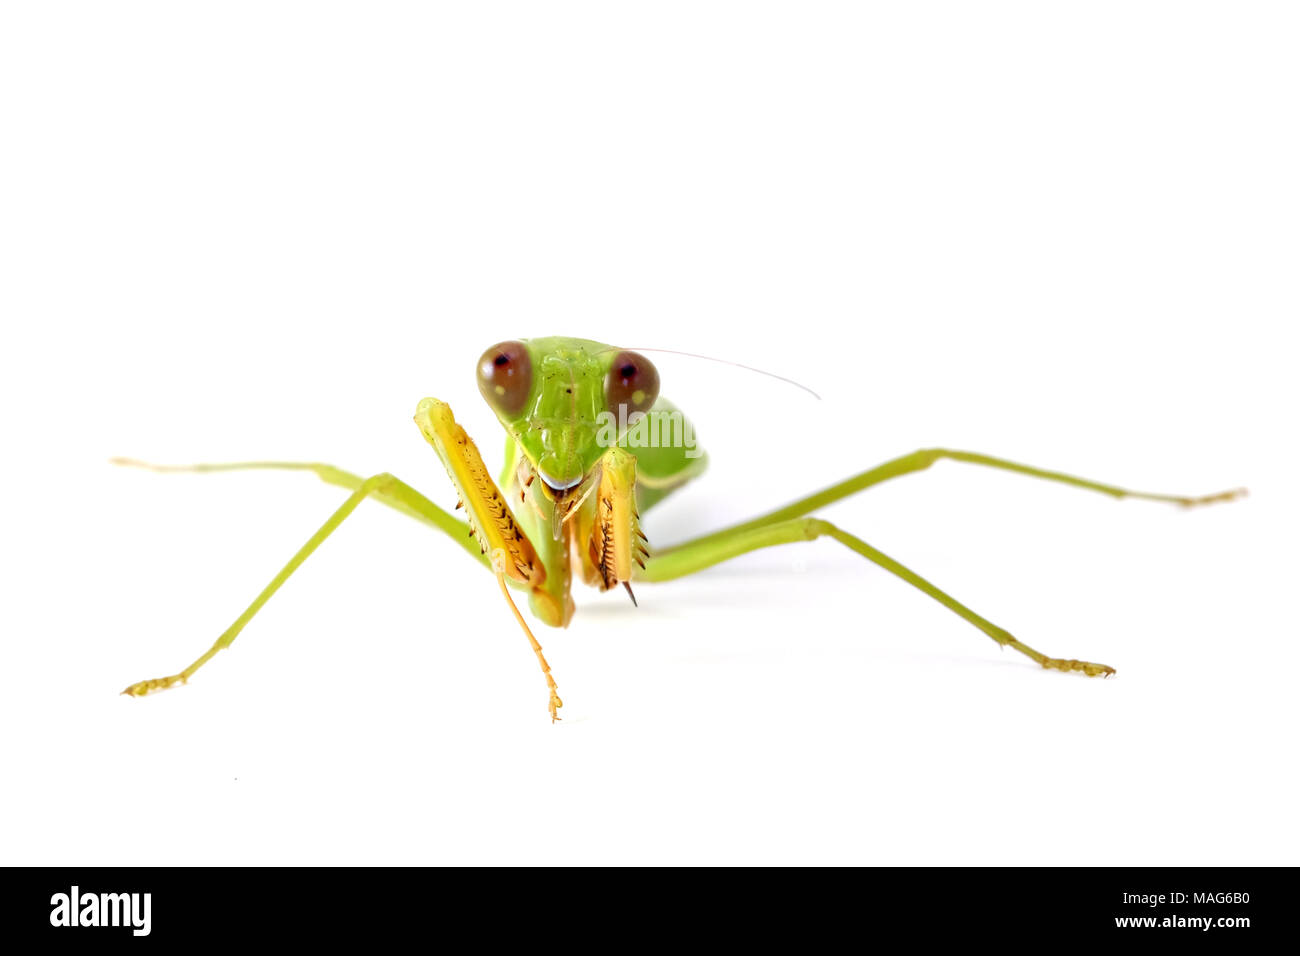 Weibliche Europäische Gottesanbeterin oder Mantis religiosa - tierische Verhaltensweisen Vorderansicht auf weißem Hintergrund. Stockfoto